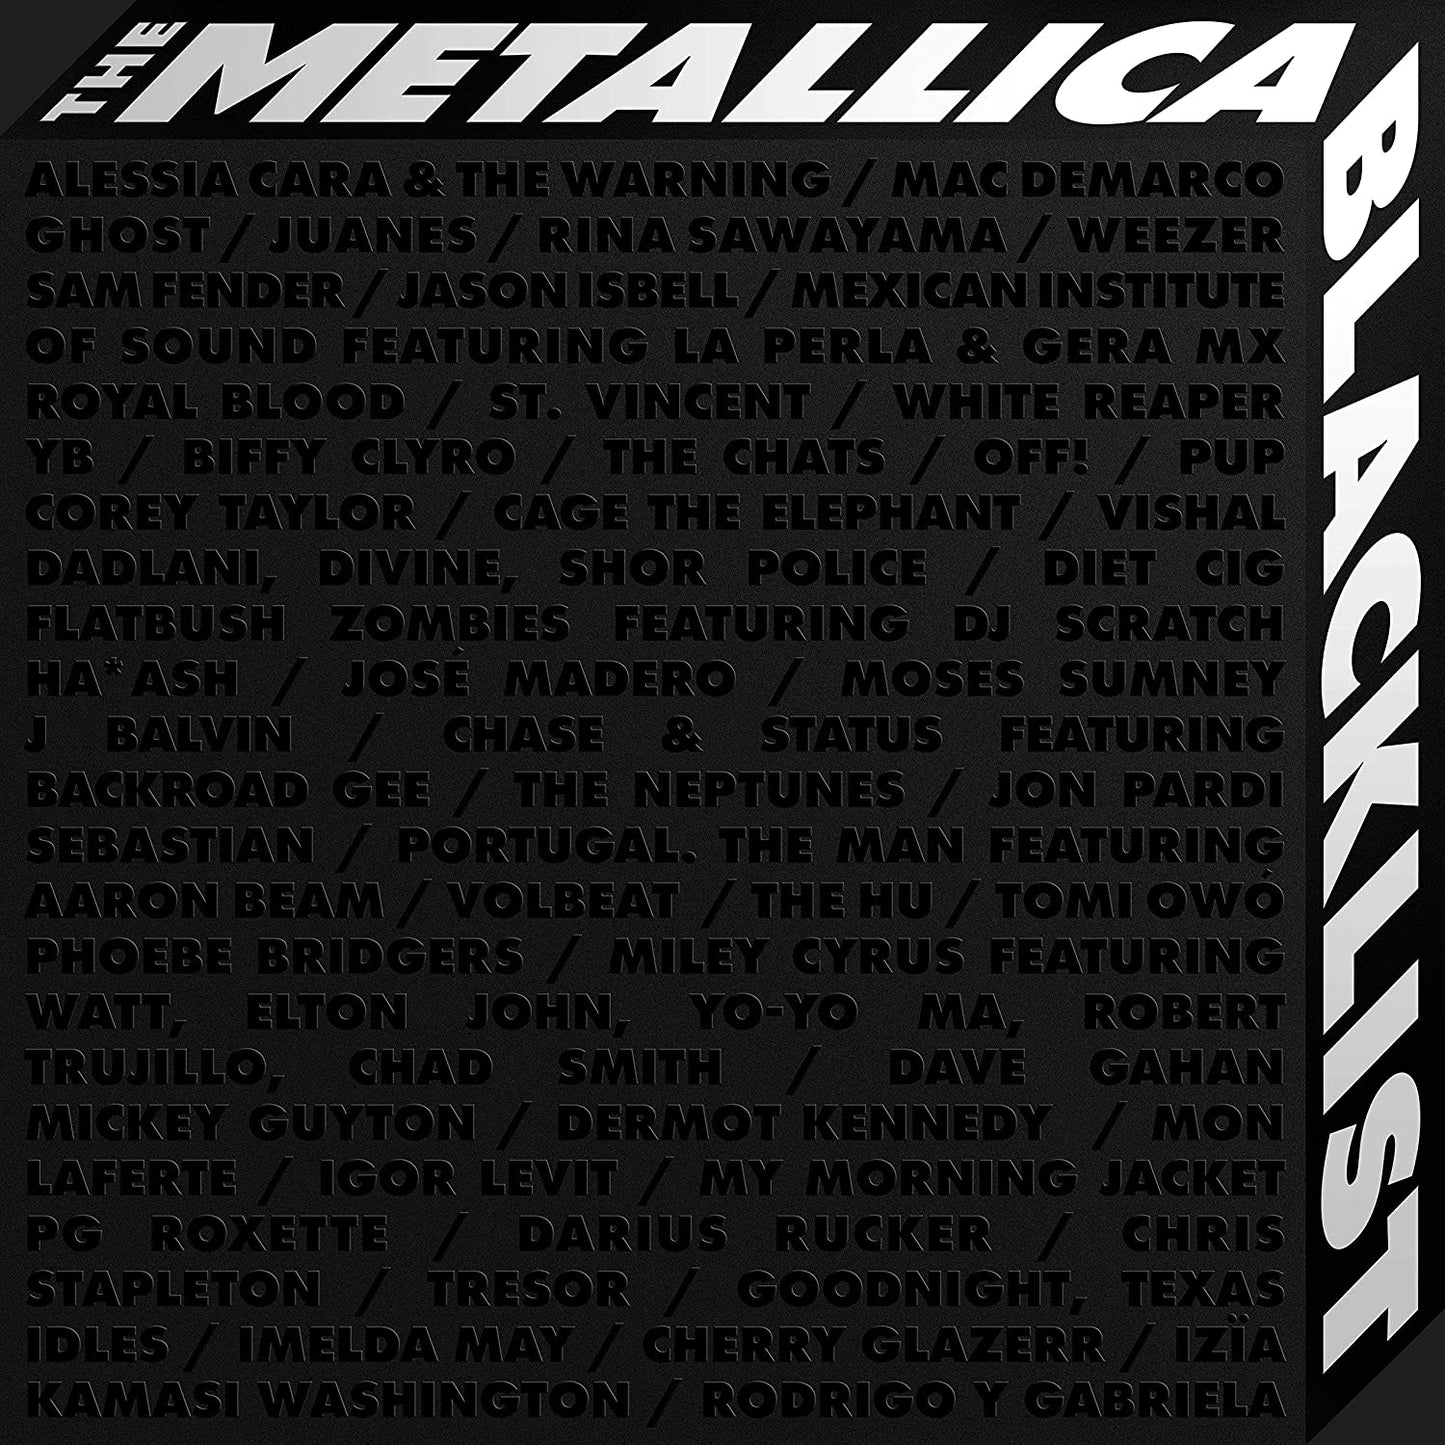 Metallica Blacklist (7 LP Boxset)